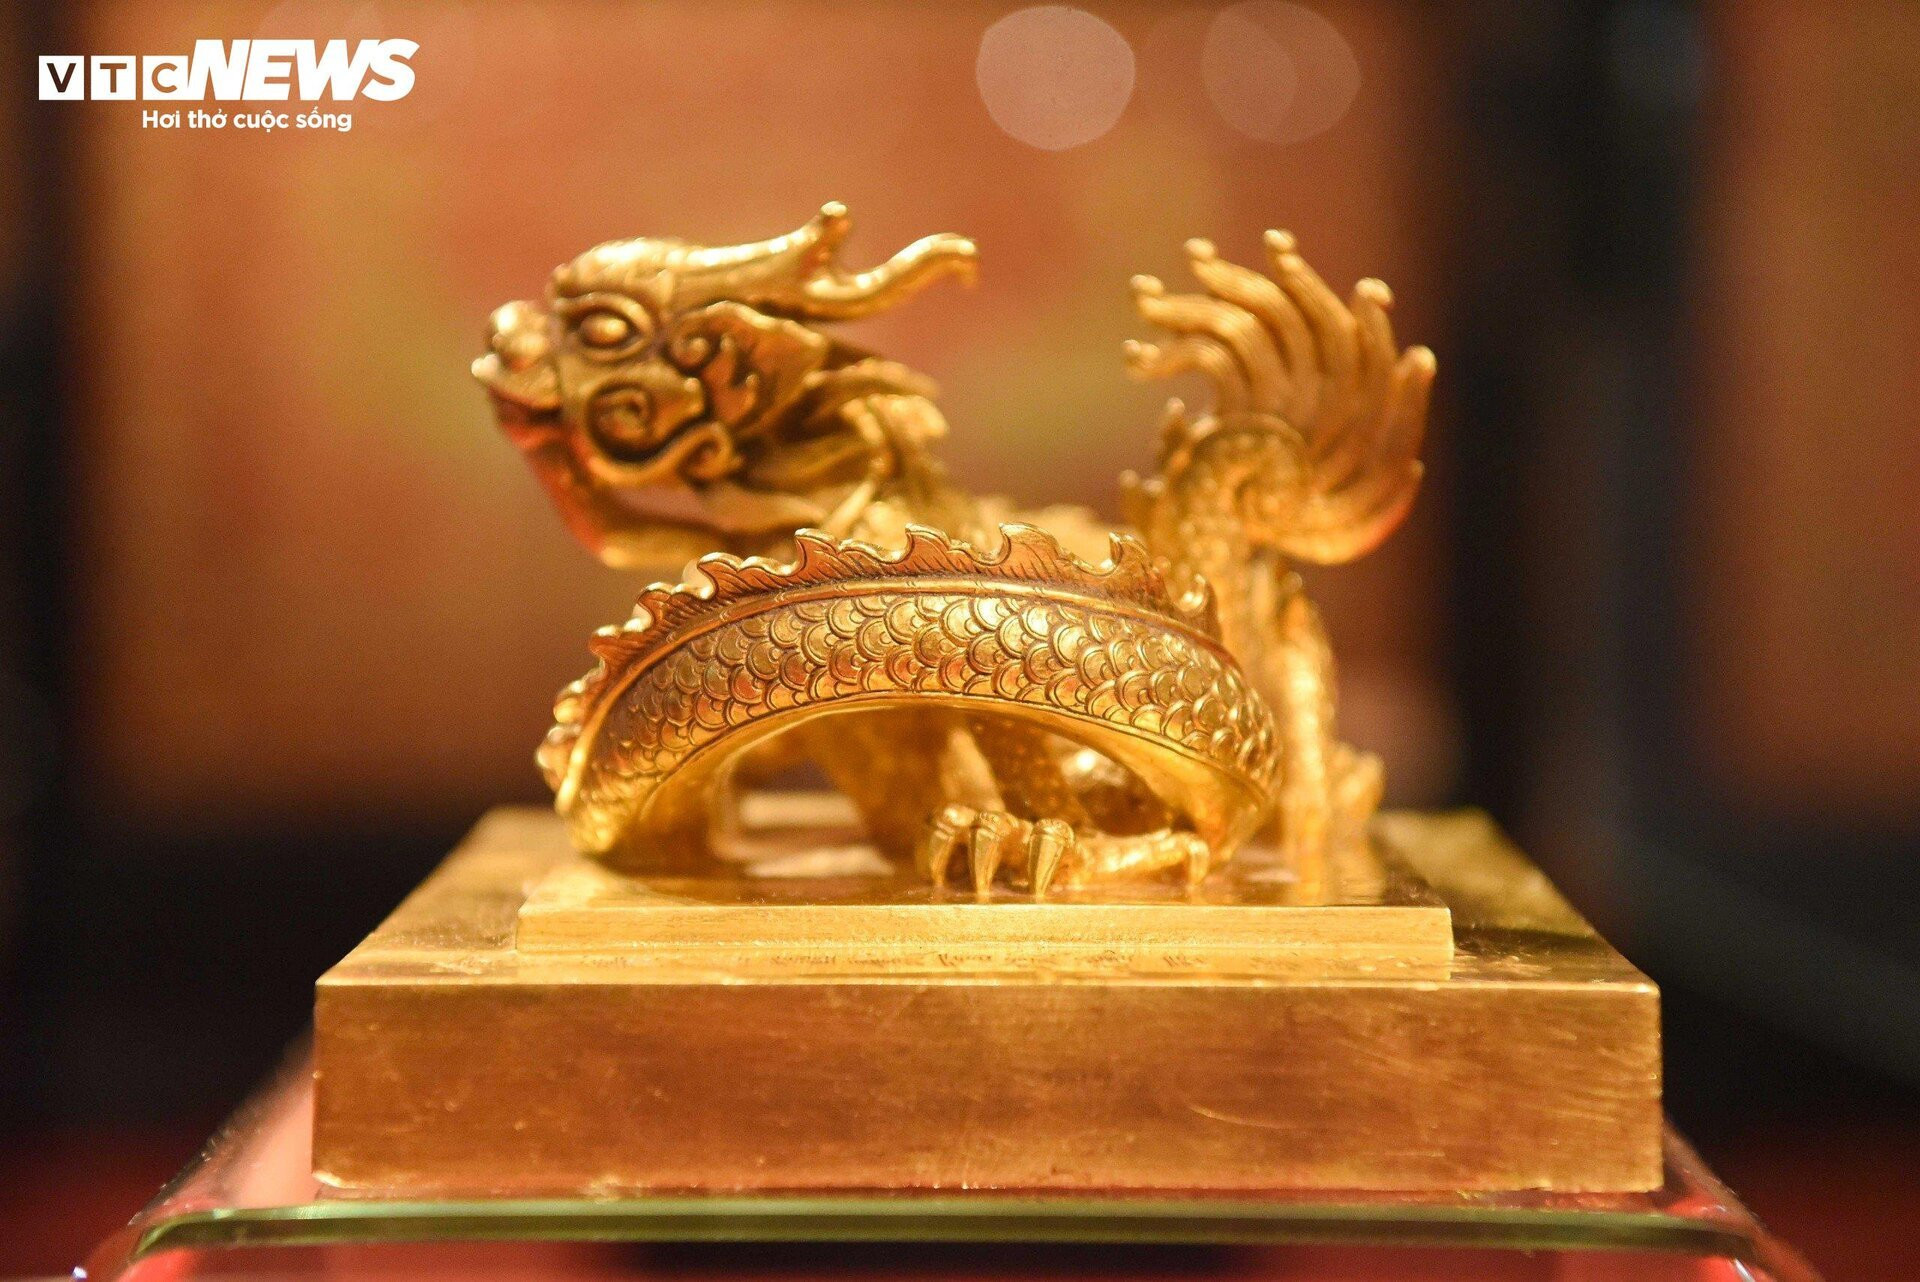 Cận cảnh ấn vàng 'Hoàng đế chi bảo' trưng bày tại bảo tàng tư nhân ở Bắc Ninh - 4